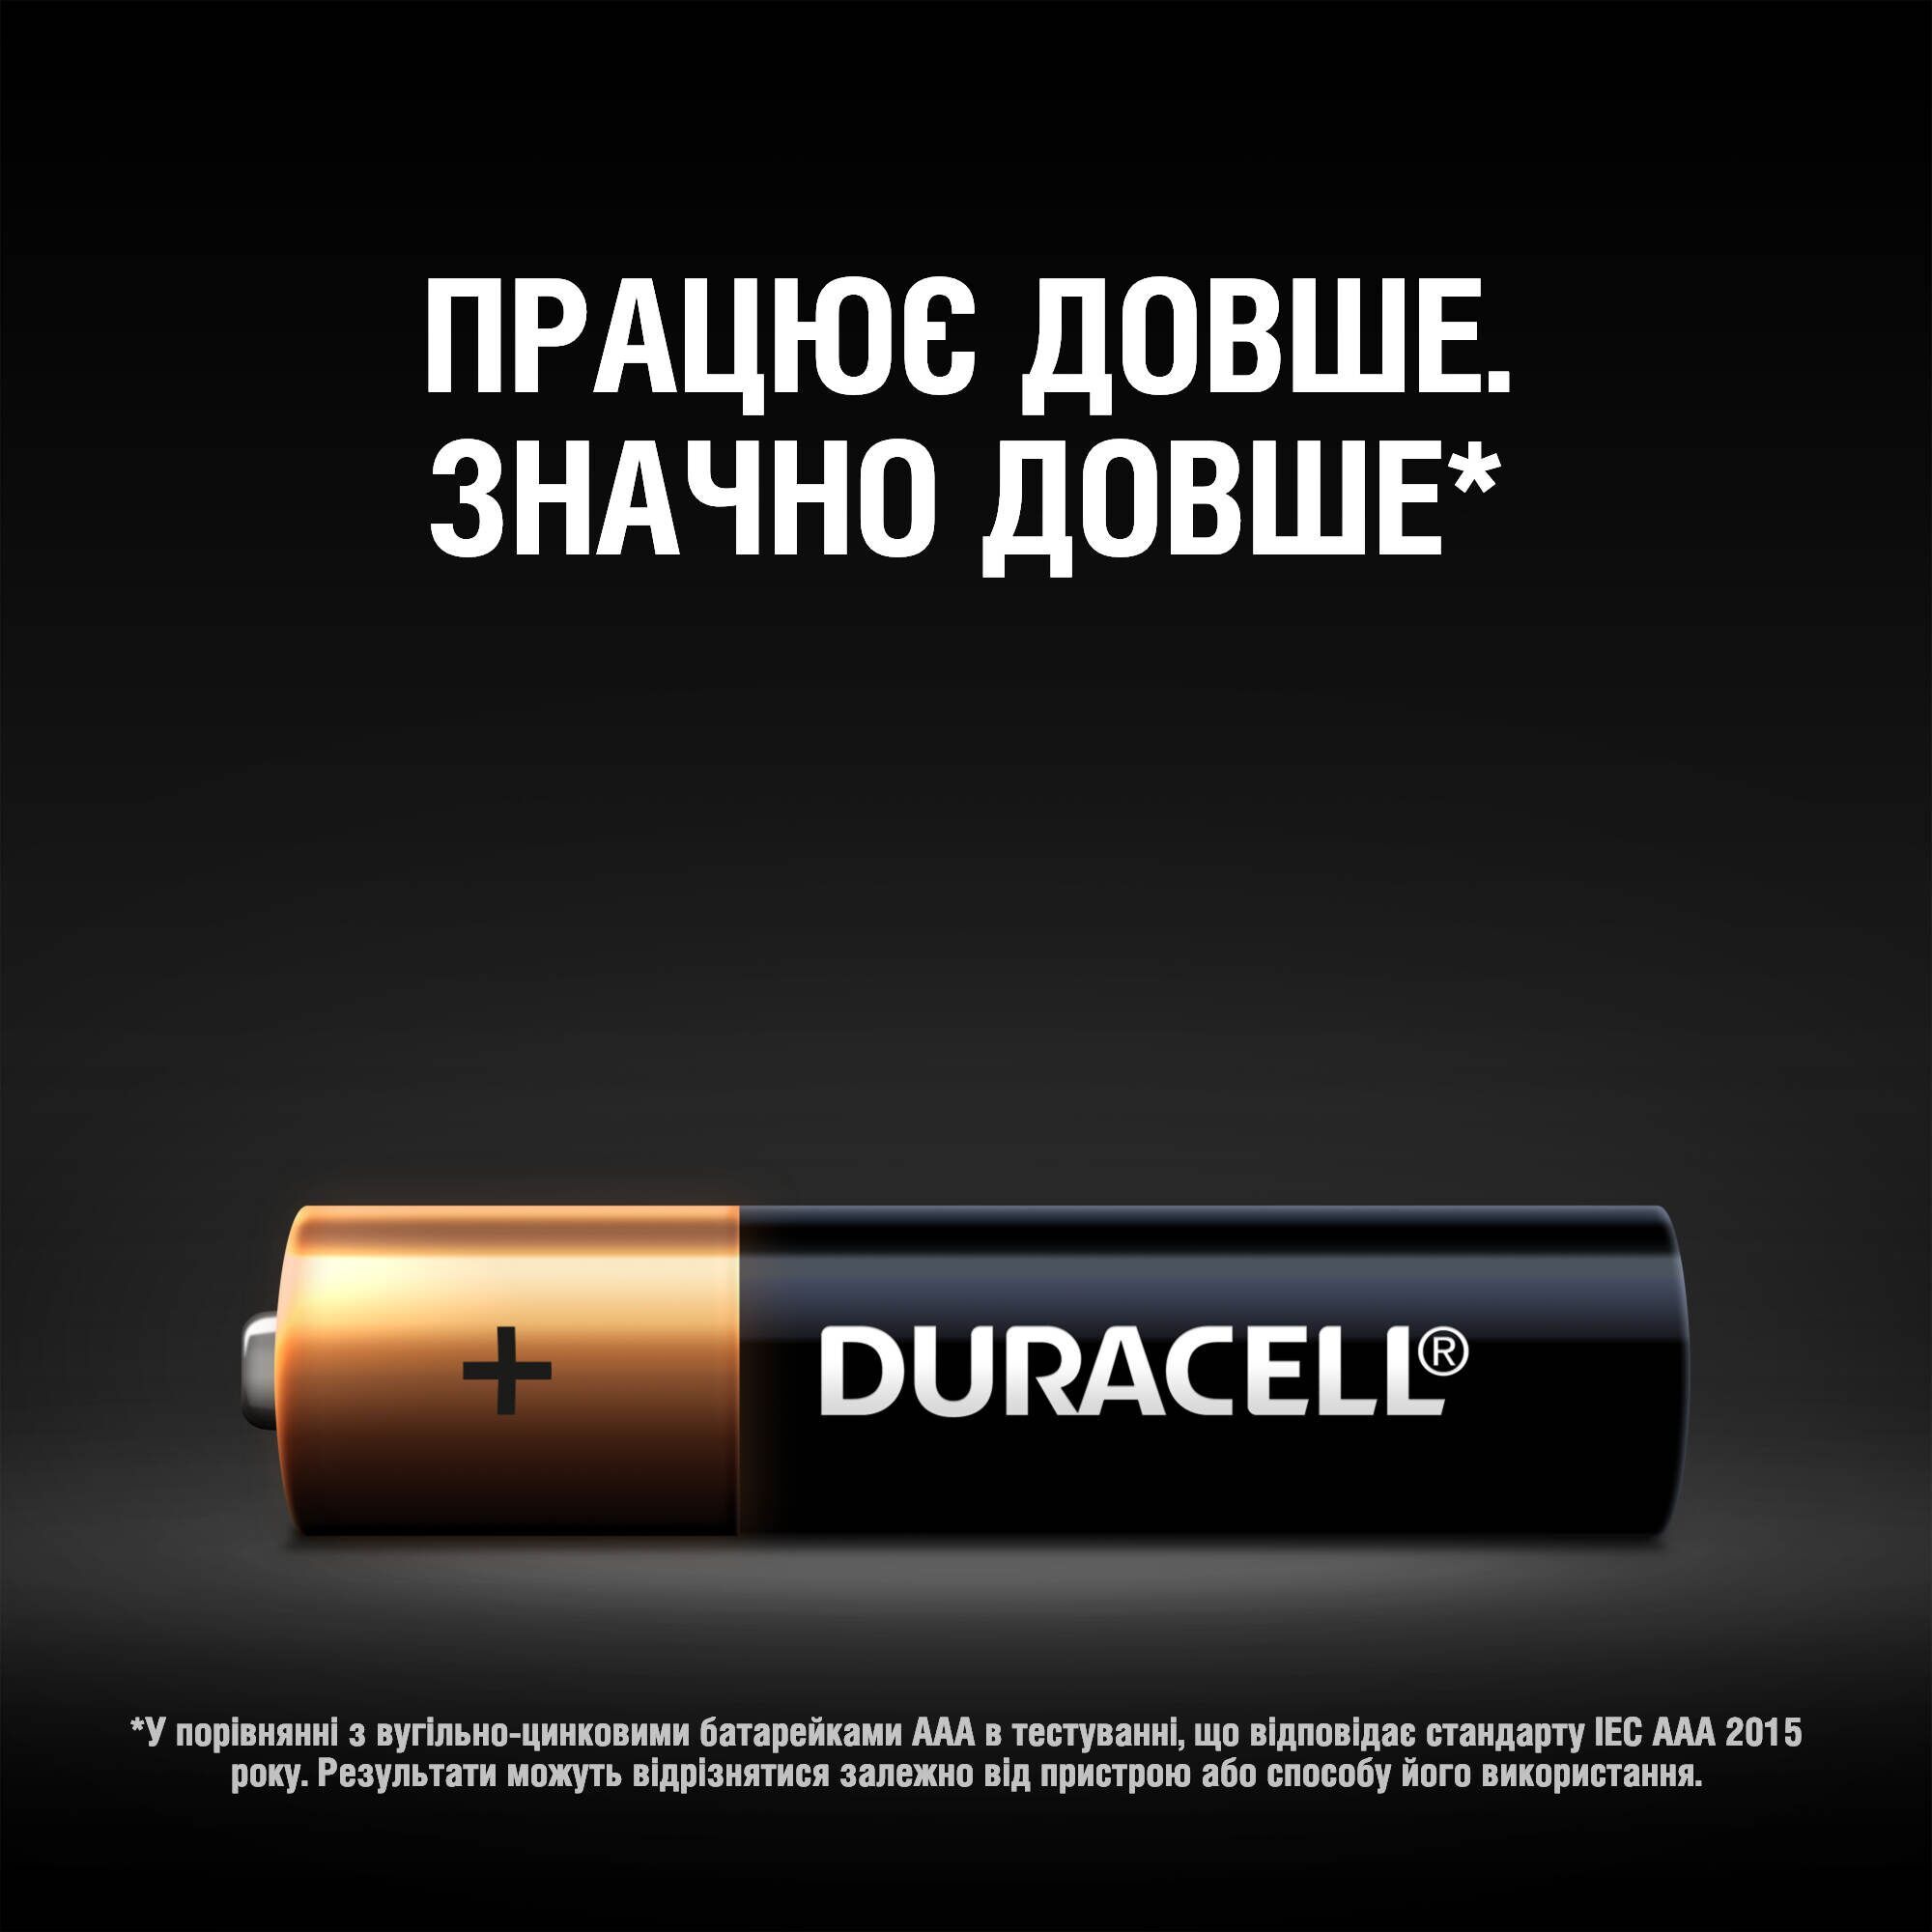 Лужні батарейки мізинчикові Duracell 1.5 V AAA LR03/MN2400, 5 шт. - фото 4